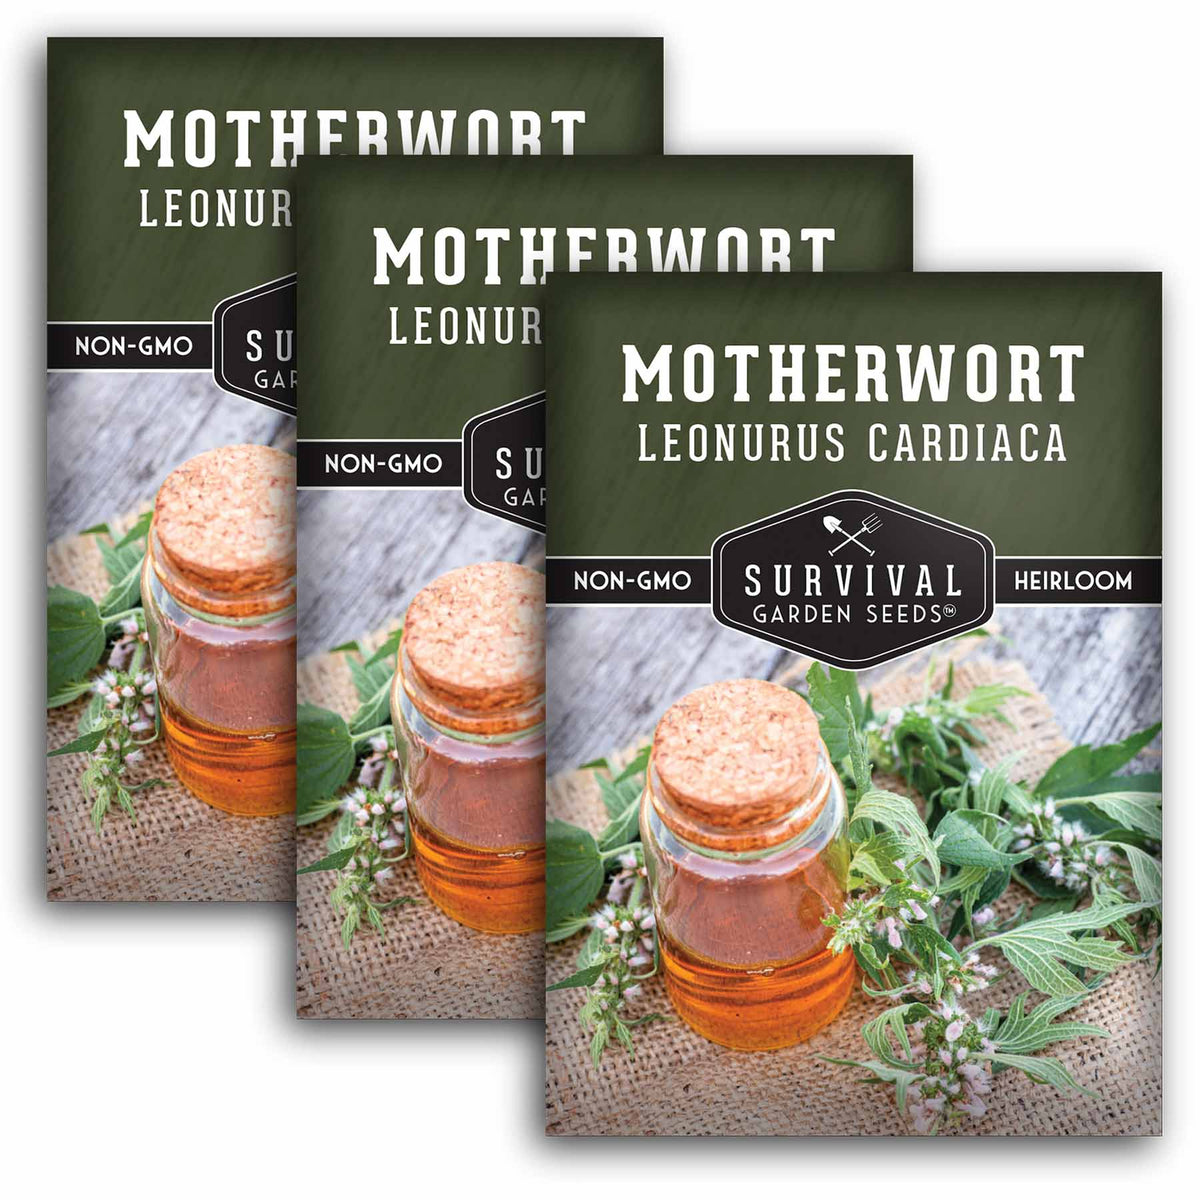 3 packets of Motherwort seeds